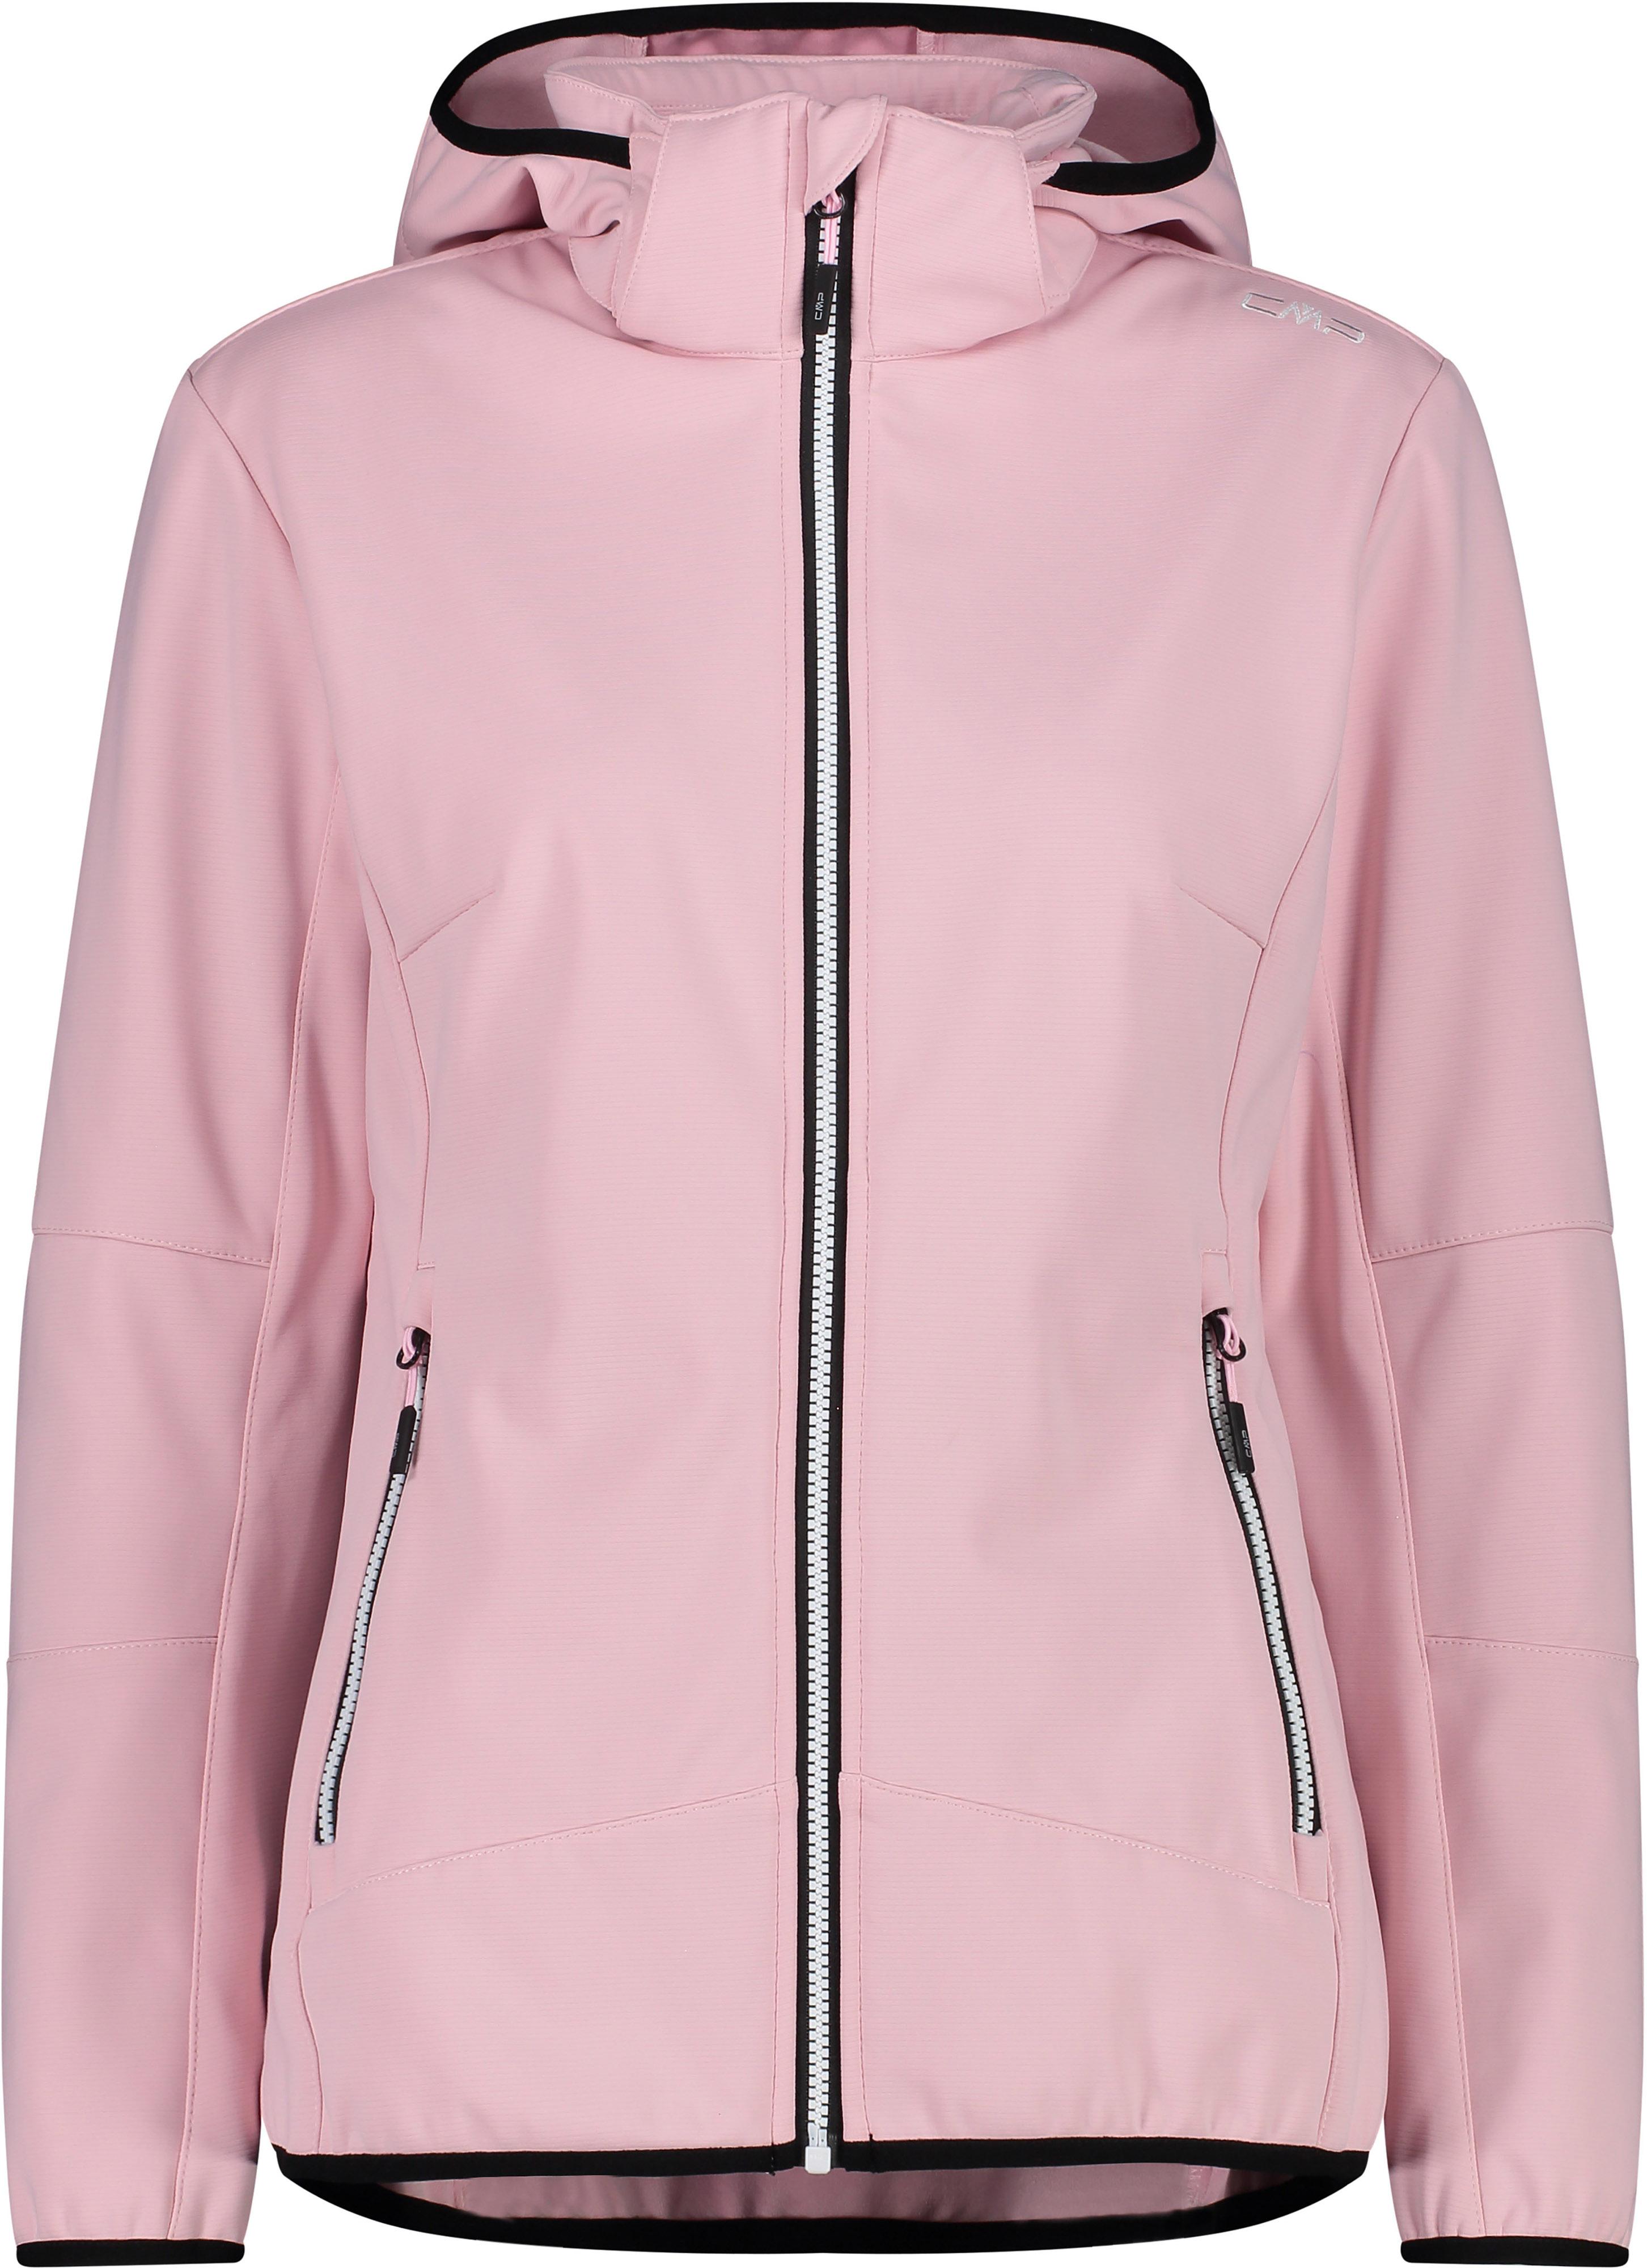 CMP WOMAN Softshelljacke im SportScheck HOOD JACKET pink kaufen ZIP Shop Online von Damen